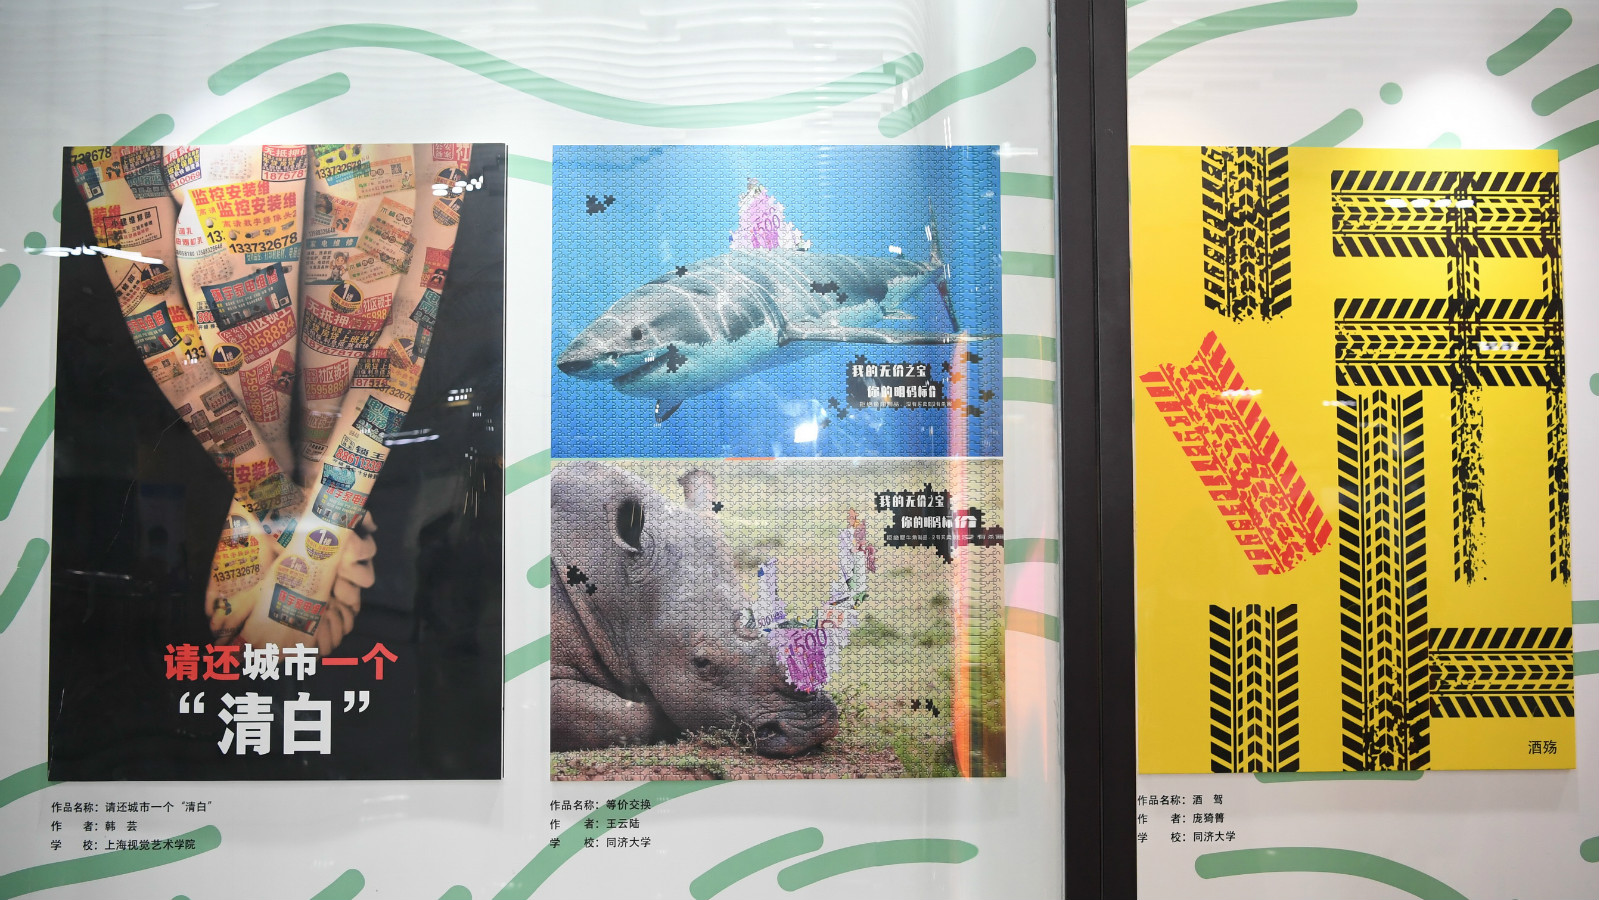 地铁站展示的上海市大学生公益广告大赛获奖作品2.jpg